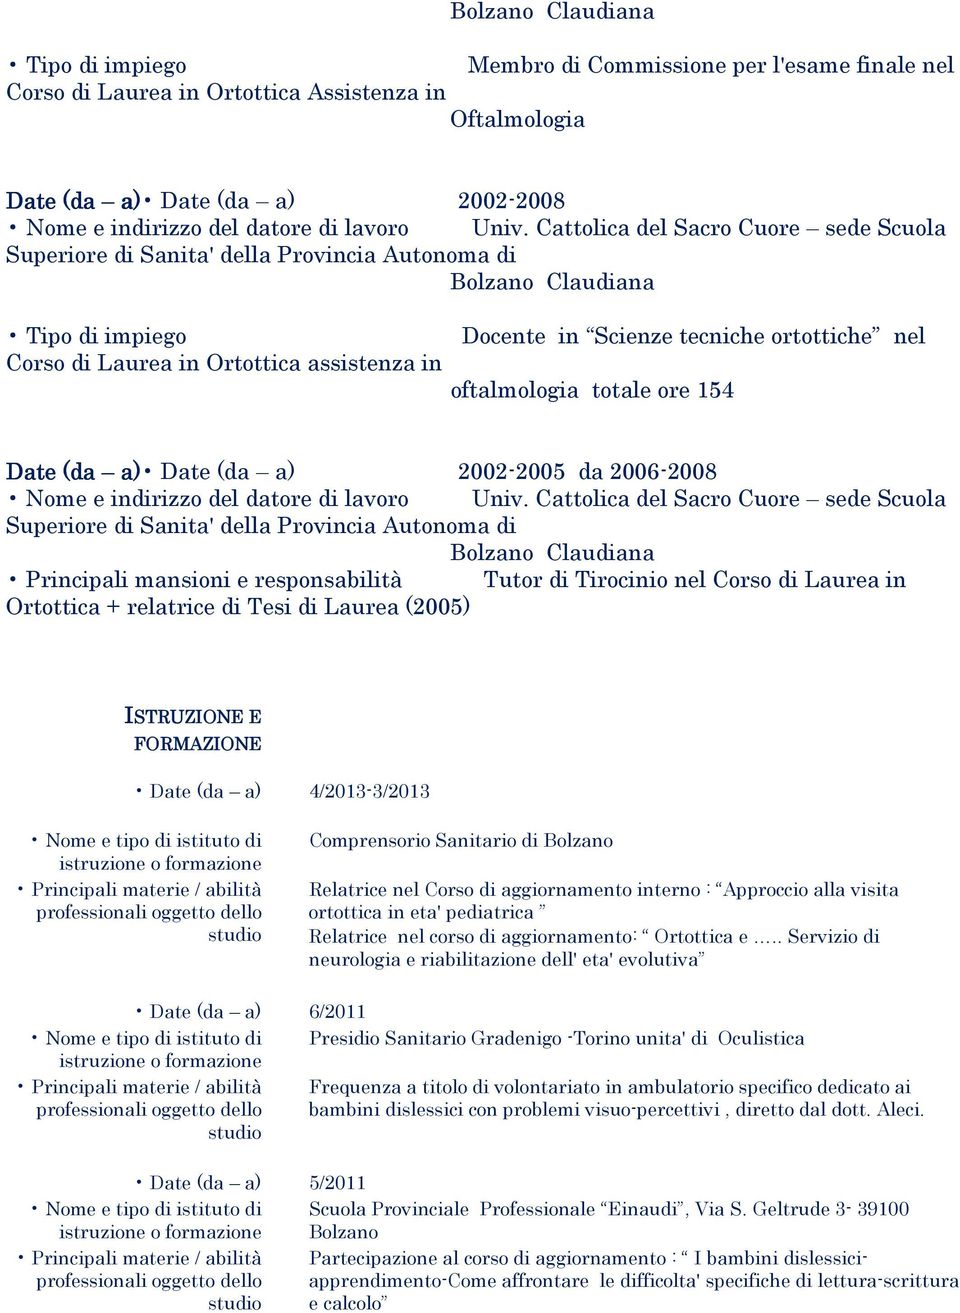 Tirocinio nel Corso di Laurea in Ortottica + relatrice di Tesi di Laurea (2005) ISTRUZIONE E FORMAZIONE Date (da a) 4/2013-3/2013 Comprensorio Sanitario di Bolzano Relatrice nel Corso di